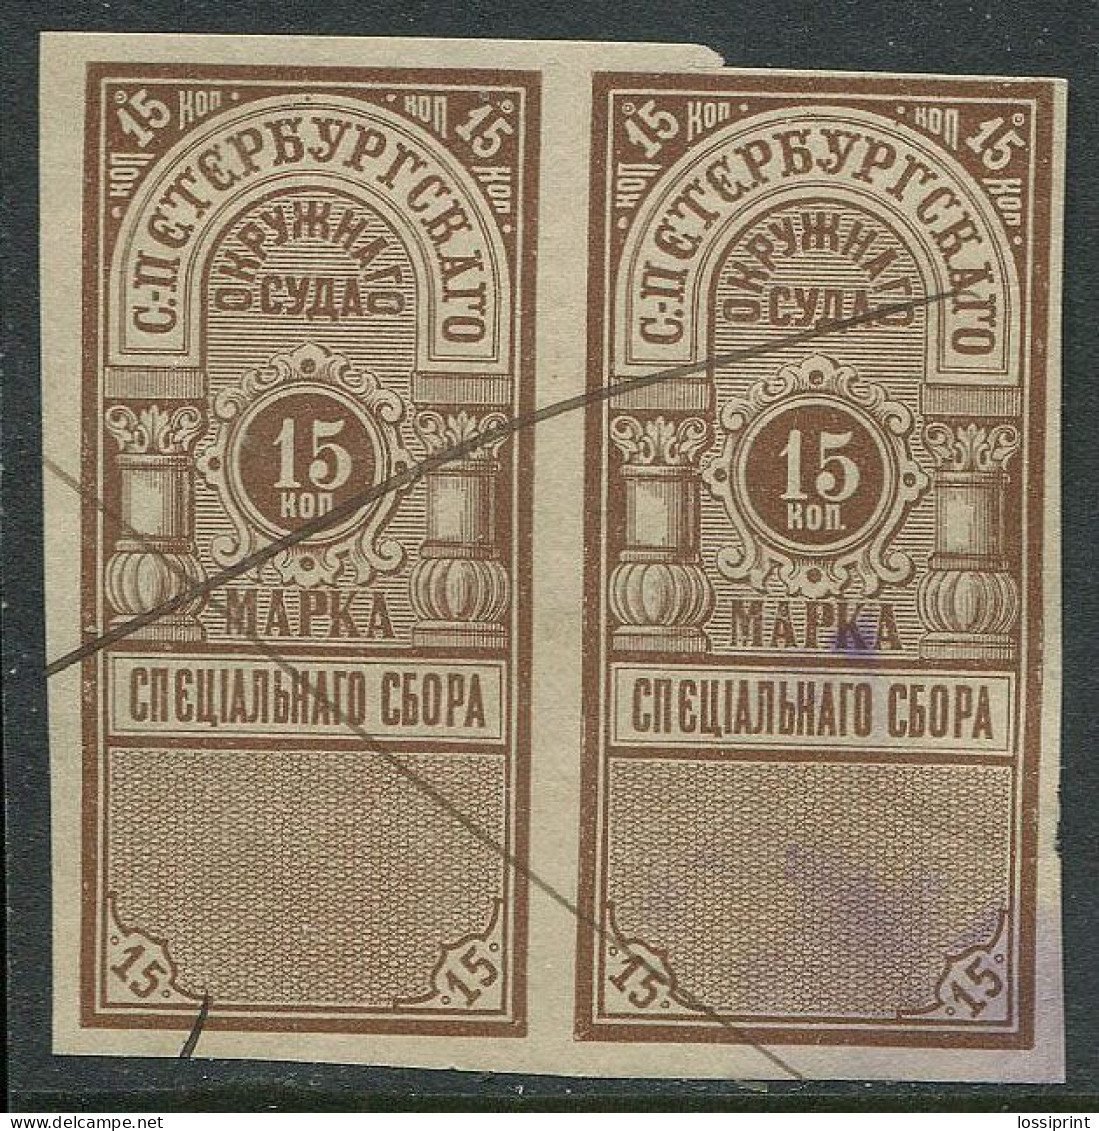 Russia:Used 15 Copecks Revenue Stamps Pair, Pre 1916 - Fiscali